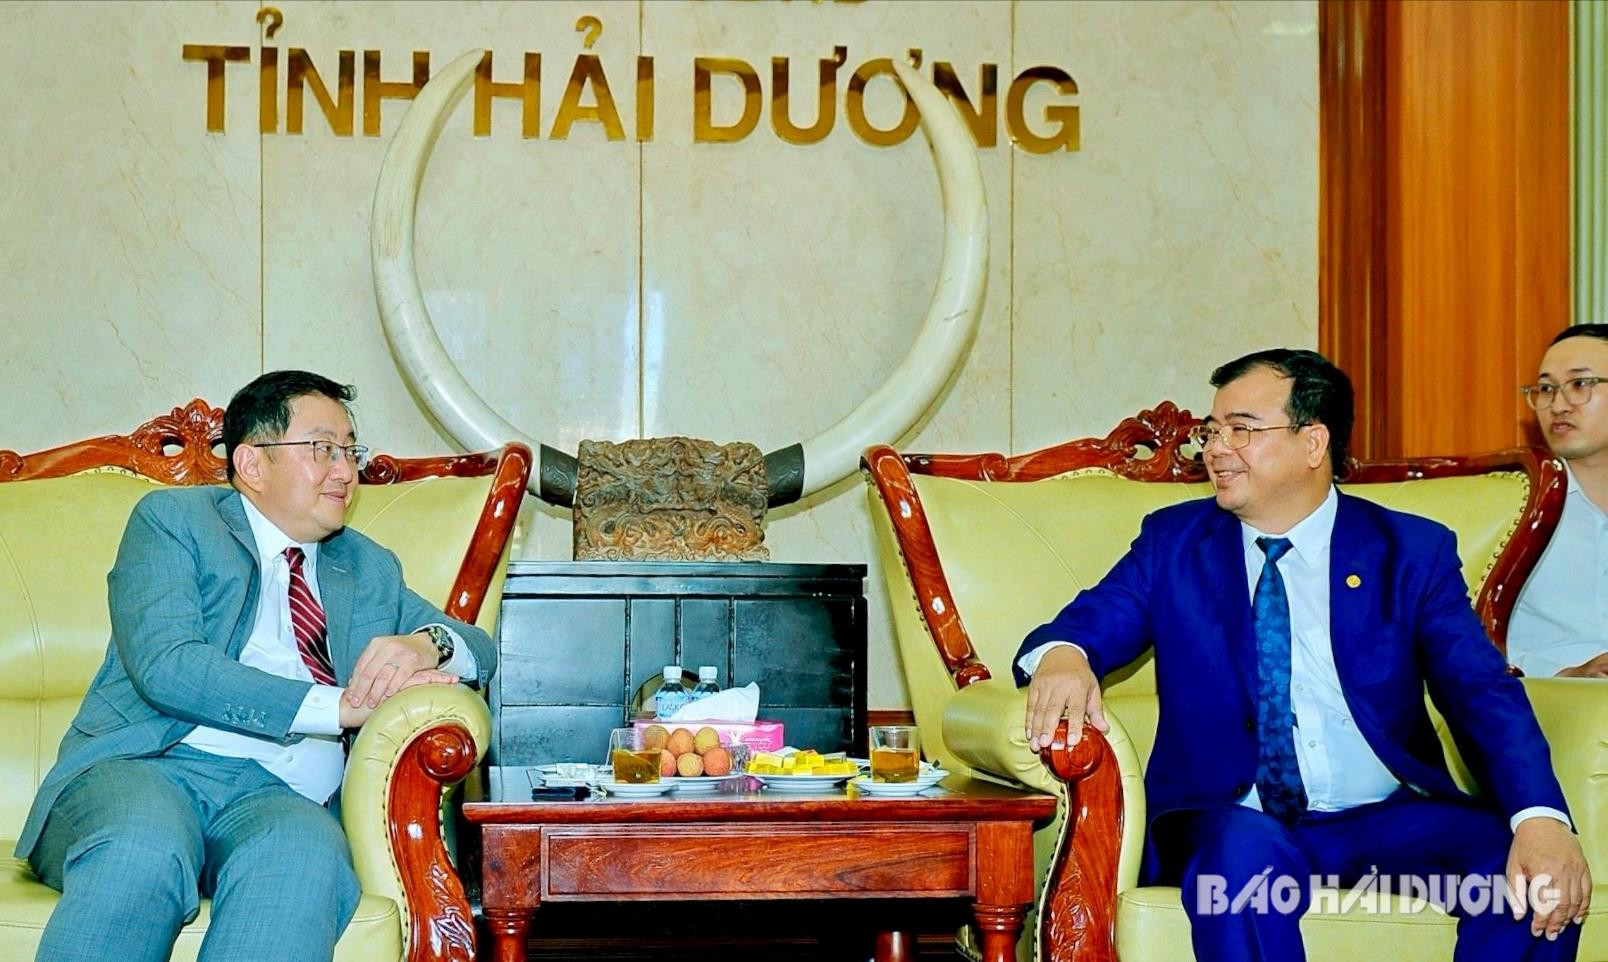 Đồng chí Phó Chủ tịch UBND tỉnh Nguyễn Minh Hùng thông tin tới ngài Dato’ Tan Yang Thai, Đại sứ Đặc mệnh toàn quyền Malaysia tại Việt Nam tình hình phát triển kinh tế - xã hội của tỉnh Hải Dương